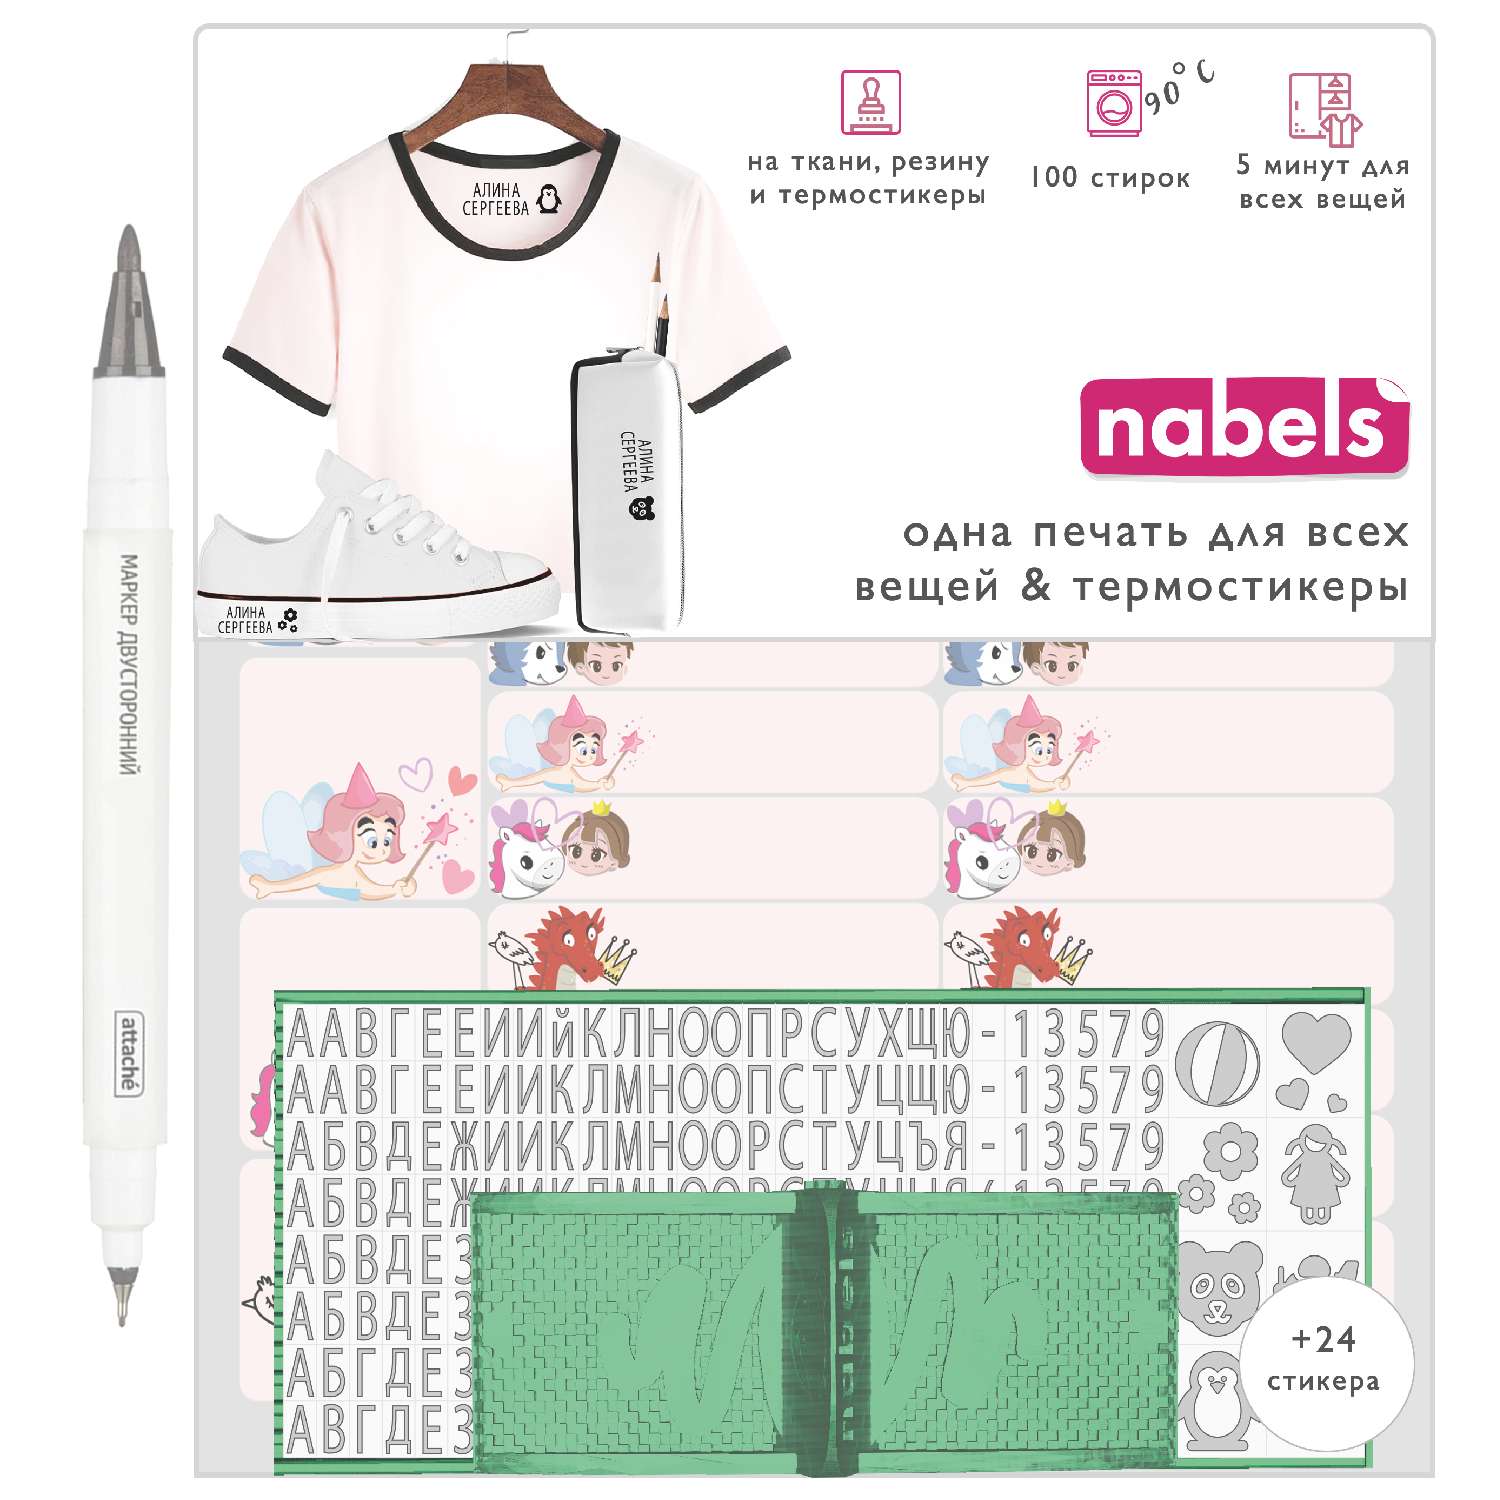 Набор Nabels для самонаборной печати и именные стикеры - термобирки Принцесса - фото 1